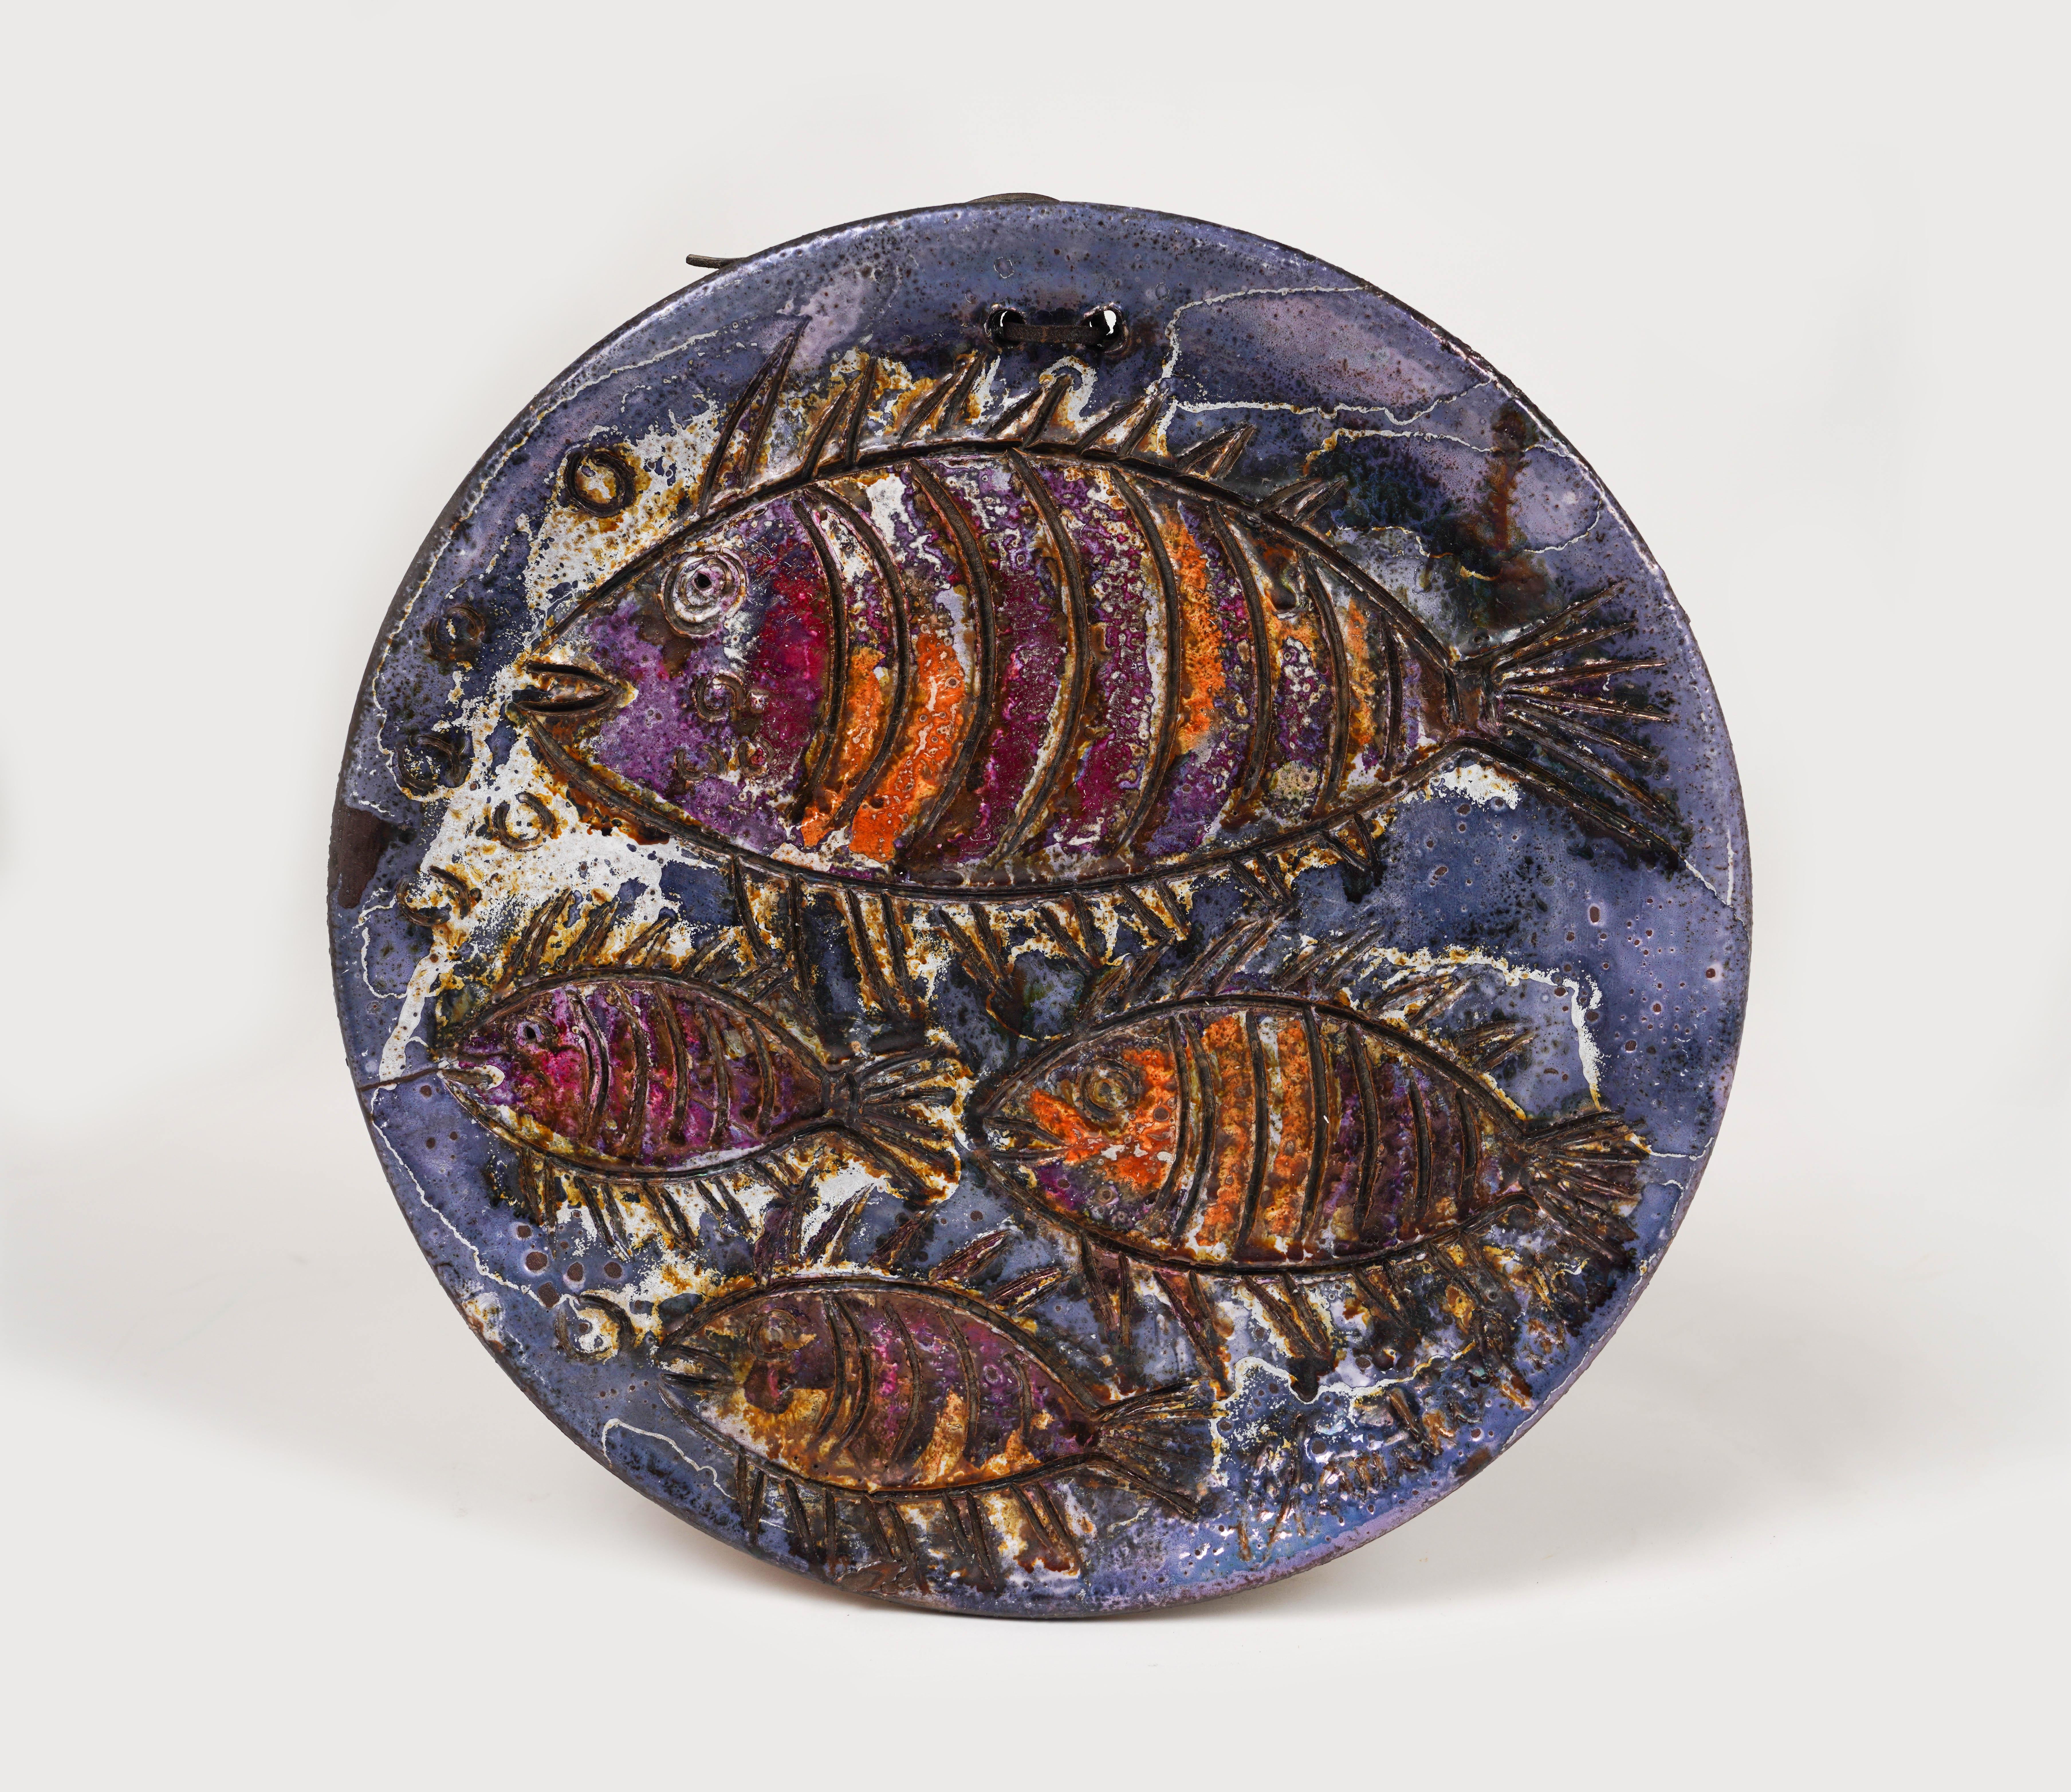 Dieser prächtige runde Wandteller mit Fischdekor wurde von dem sardischen Keramikmeister Claudio Pulli hergestellt.

Hergestellt in Italien in den 1970er Jahren.

Die Werke von Claudio Pulli werden in einem besonderen Keramikgussverfahren